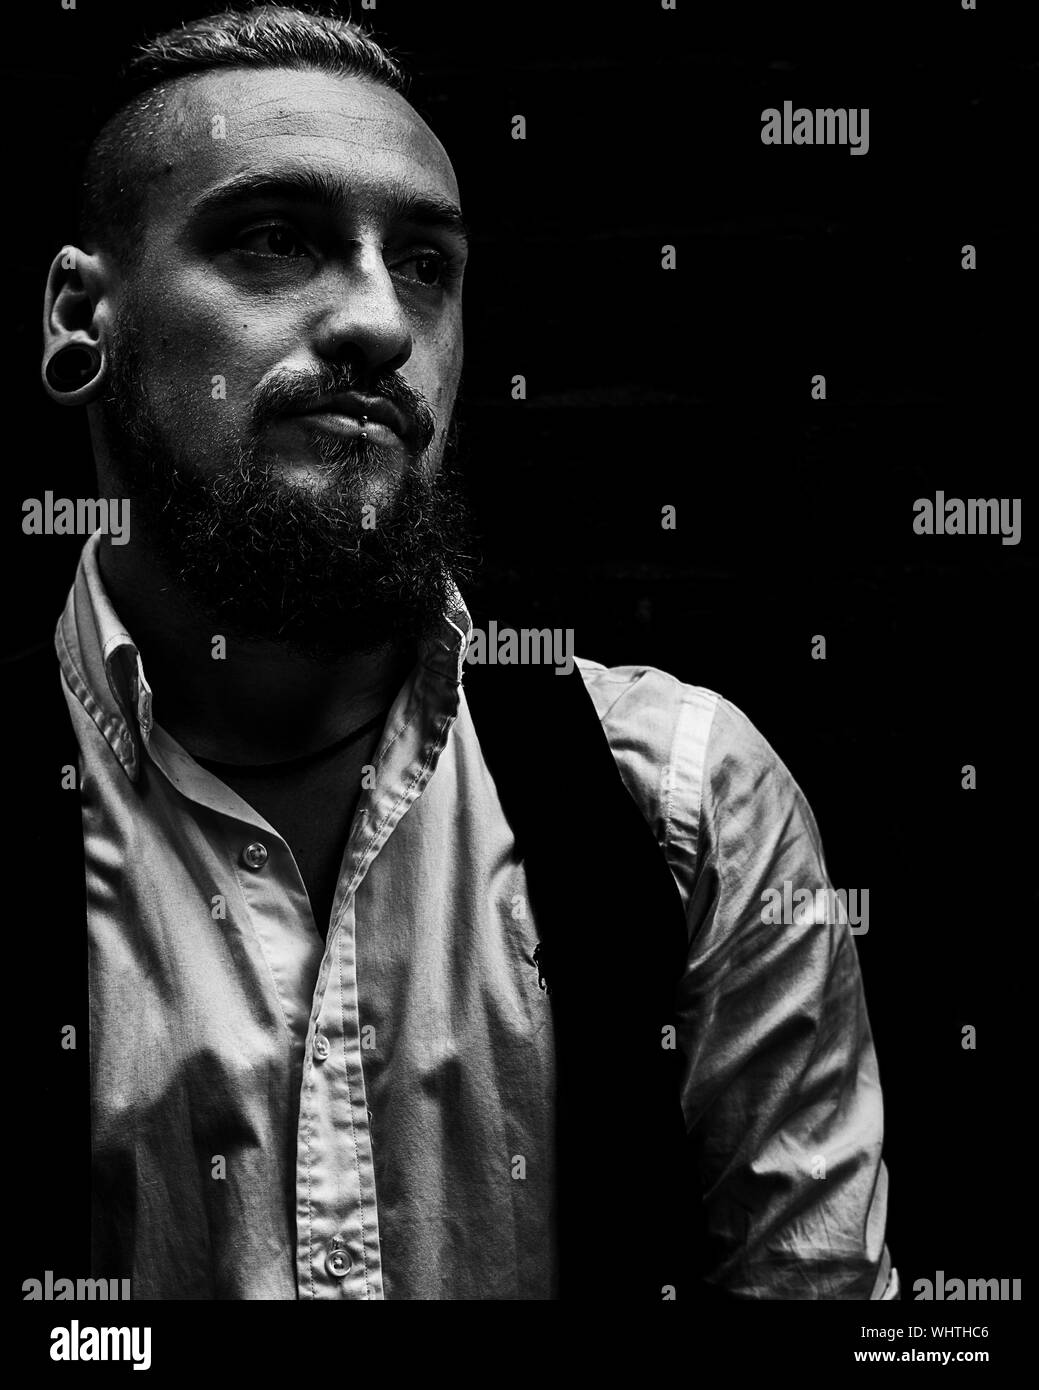 Punto sirena enaguas Male punk Imágenes de stock en blanco y negro - Alamy